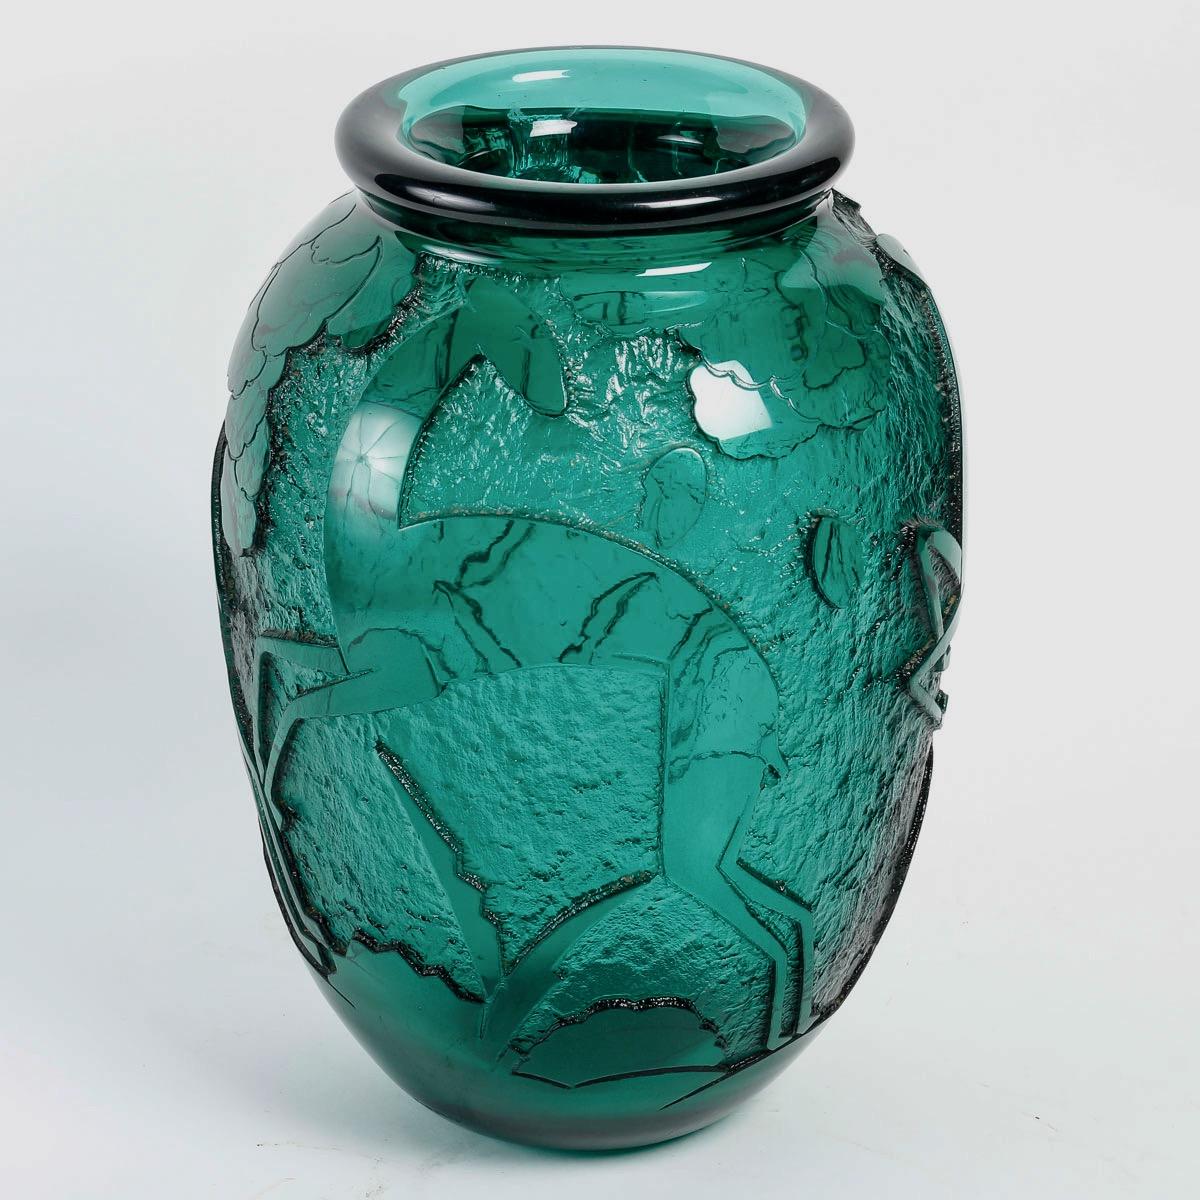 Vase en verre vert foncé gravé à l'acide Art déco de Daum Nançy, vers 1930

Rare et important vase 